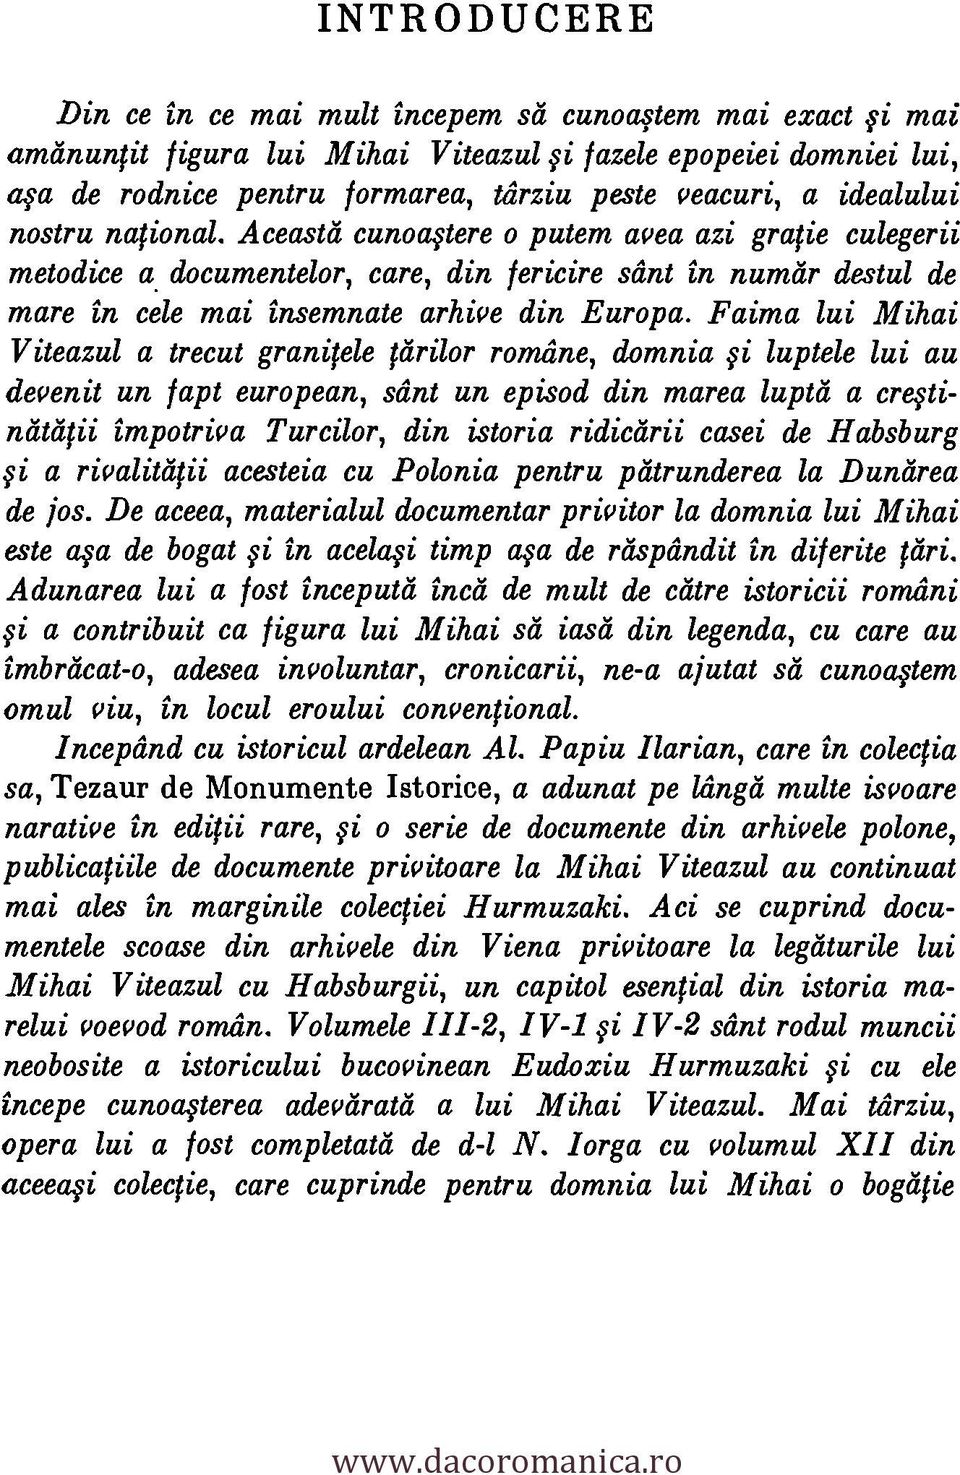 Faima lui Mihai Viteazul a trecut granitele lánilor romilne, domnia fi luptele lui au devenit un fapt european, stint un episod din marea luptd a creftiniitatii impotriva Turcilor, din istoria